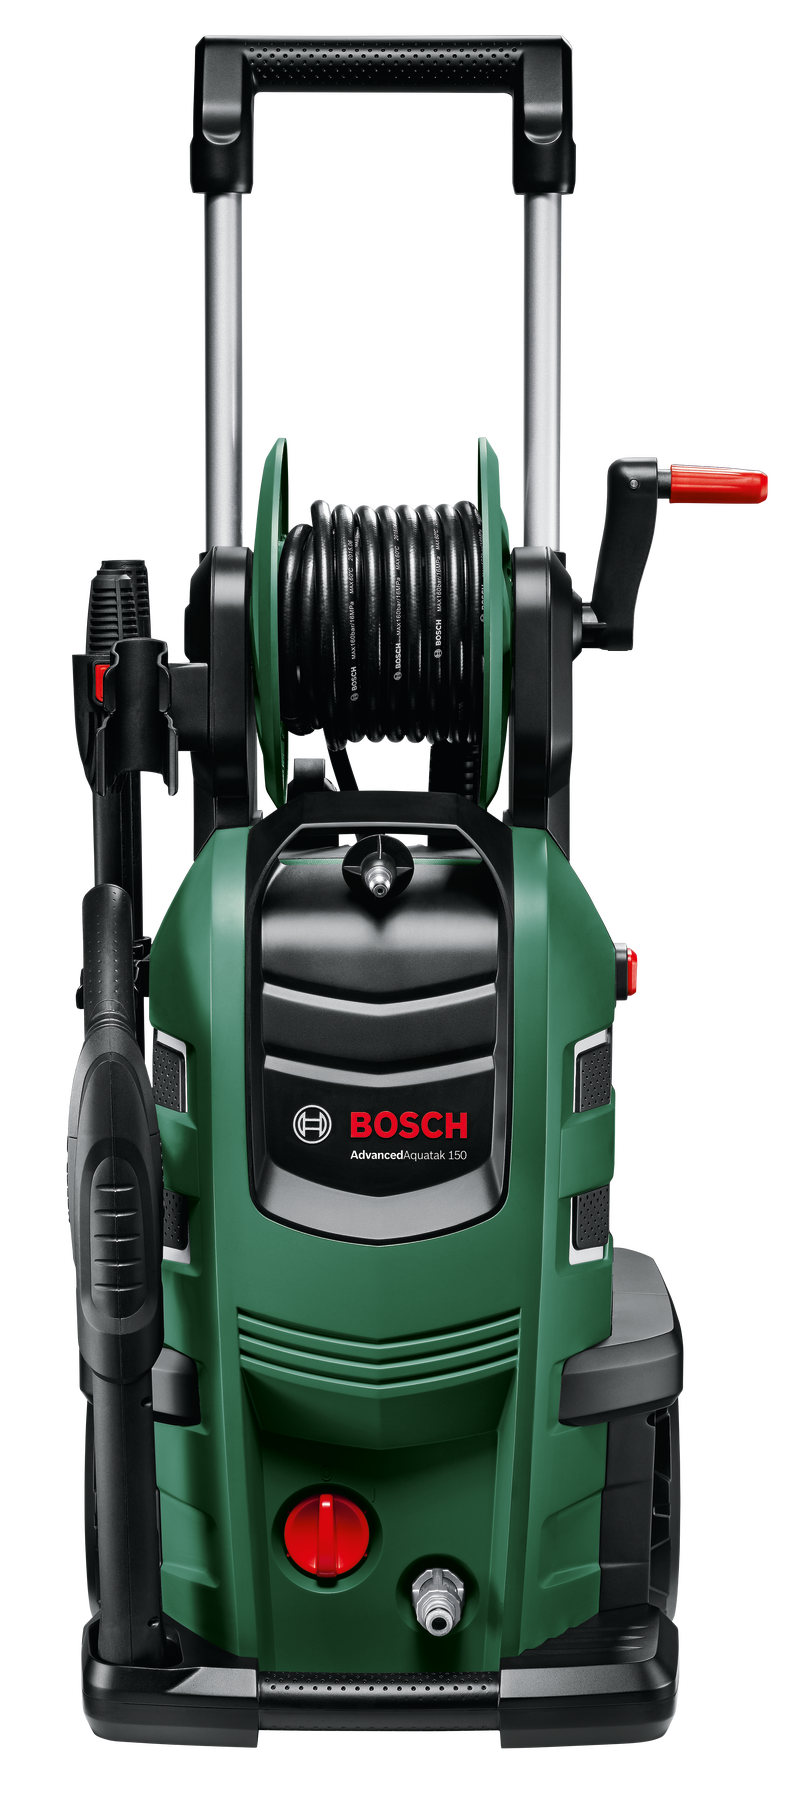 Мойка бош купить. Мойка высокого давления Bosch ADVANCEDAQUATAK 150 2.2 КВТ. Мойка высокого давления Bosch ADVANCEDAQUATAK 150. Bosch ADVANCEDAQUATAK 160. Мойка высокого давления Bosch ADVANCEDAQUATAK 160.